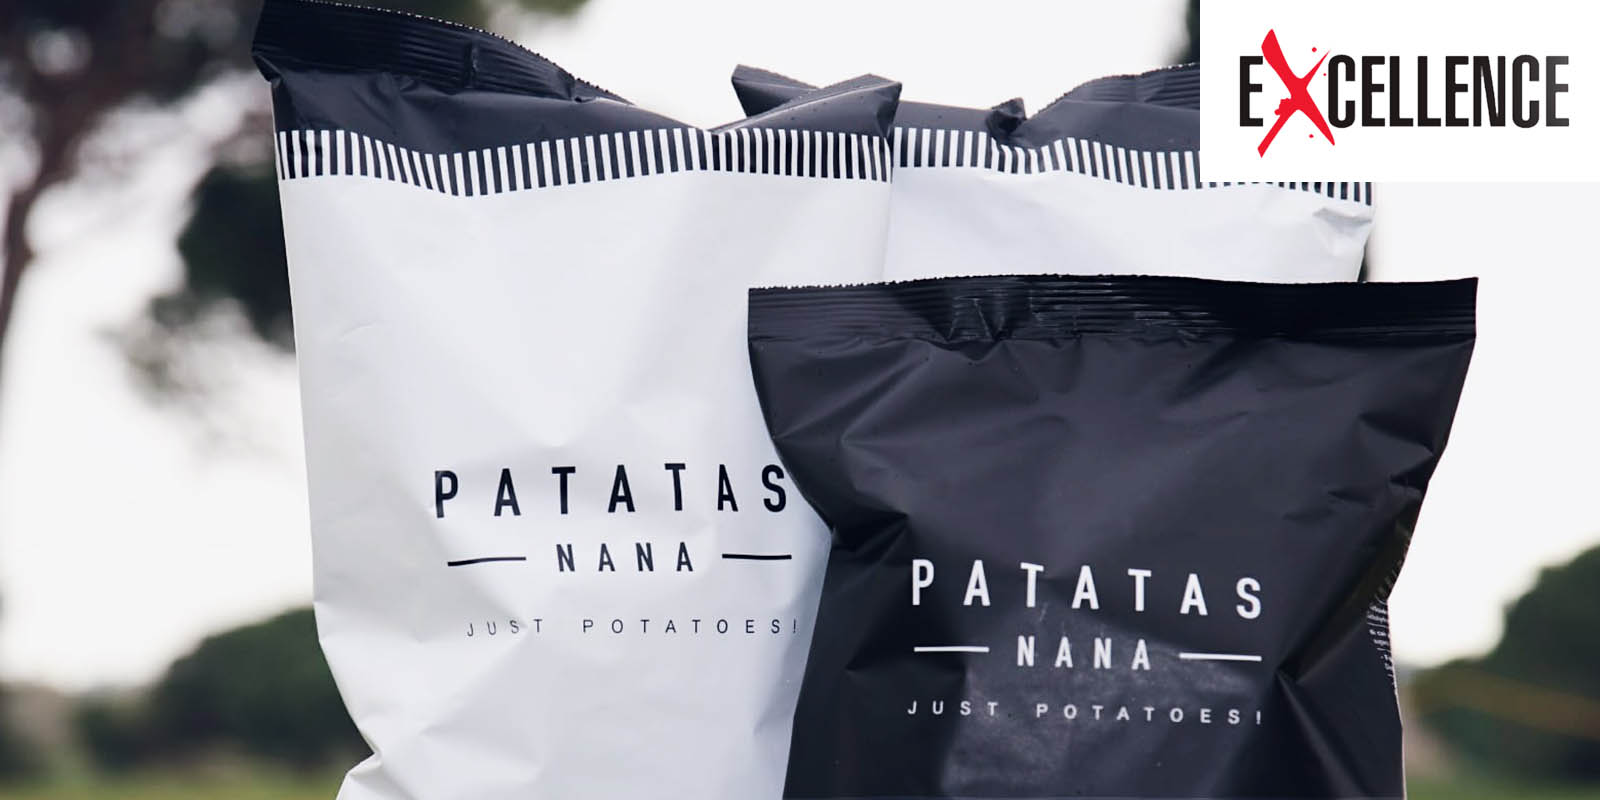 Un’altro bellissimo articolo di Excellence su Patatas Nana